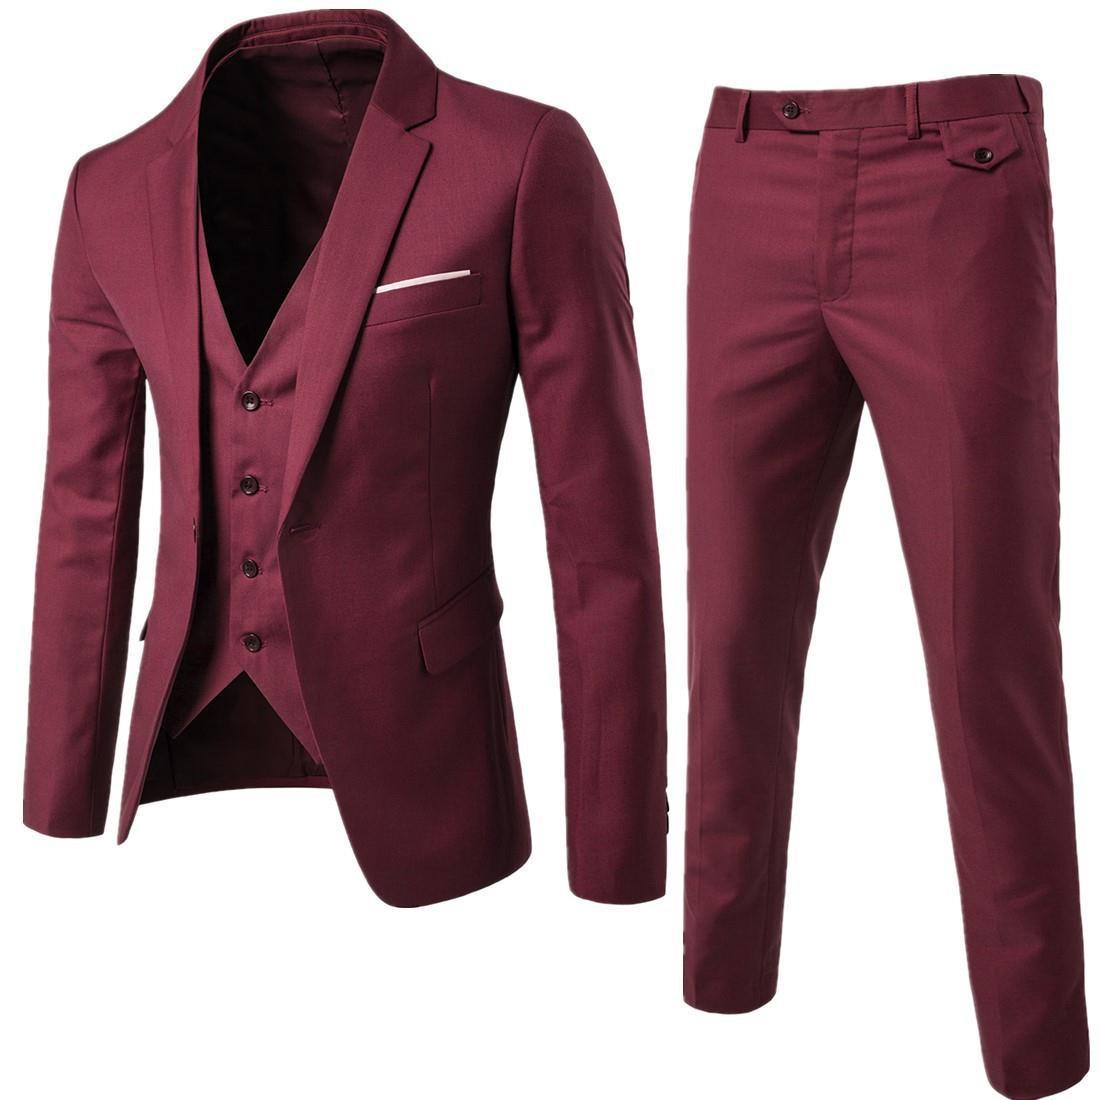 Men's Business Casual Suit Three-piece Suit 